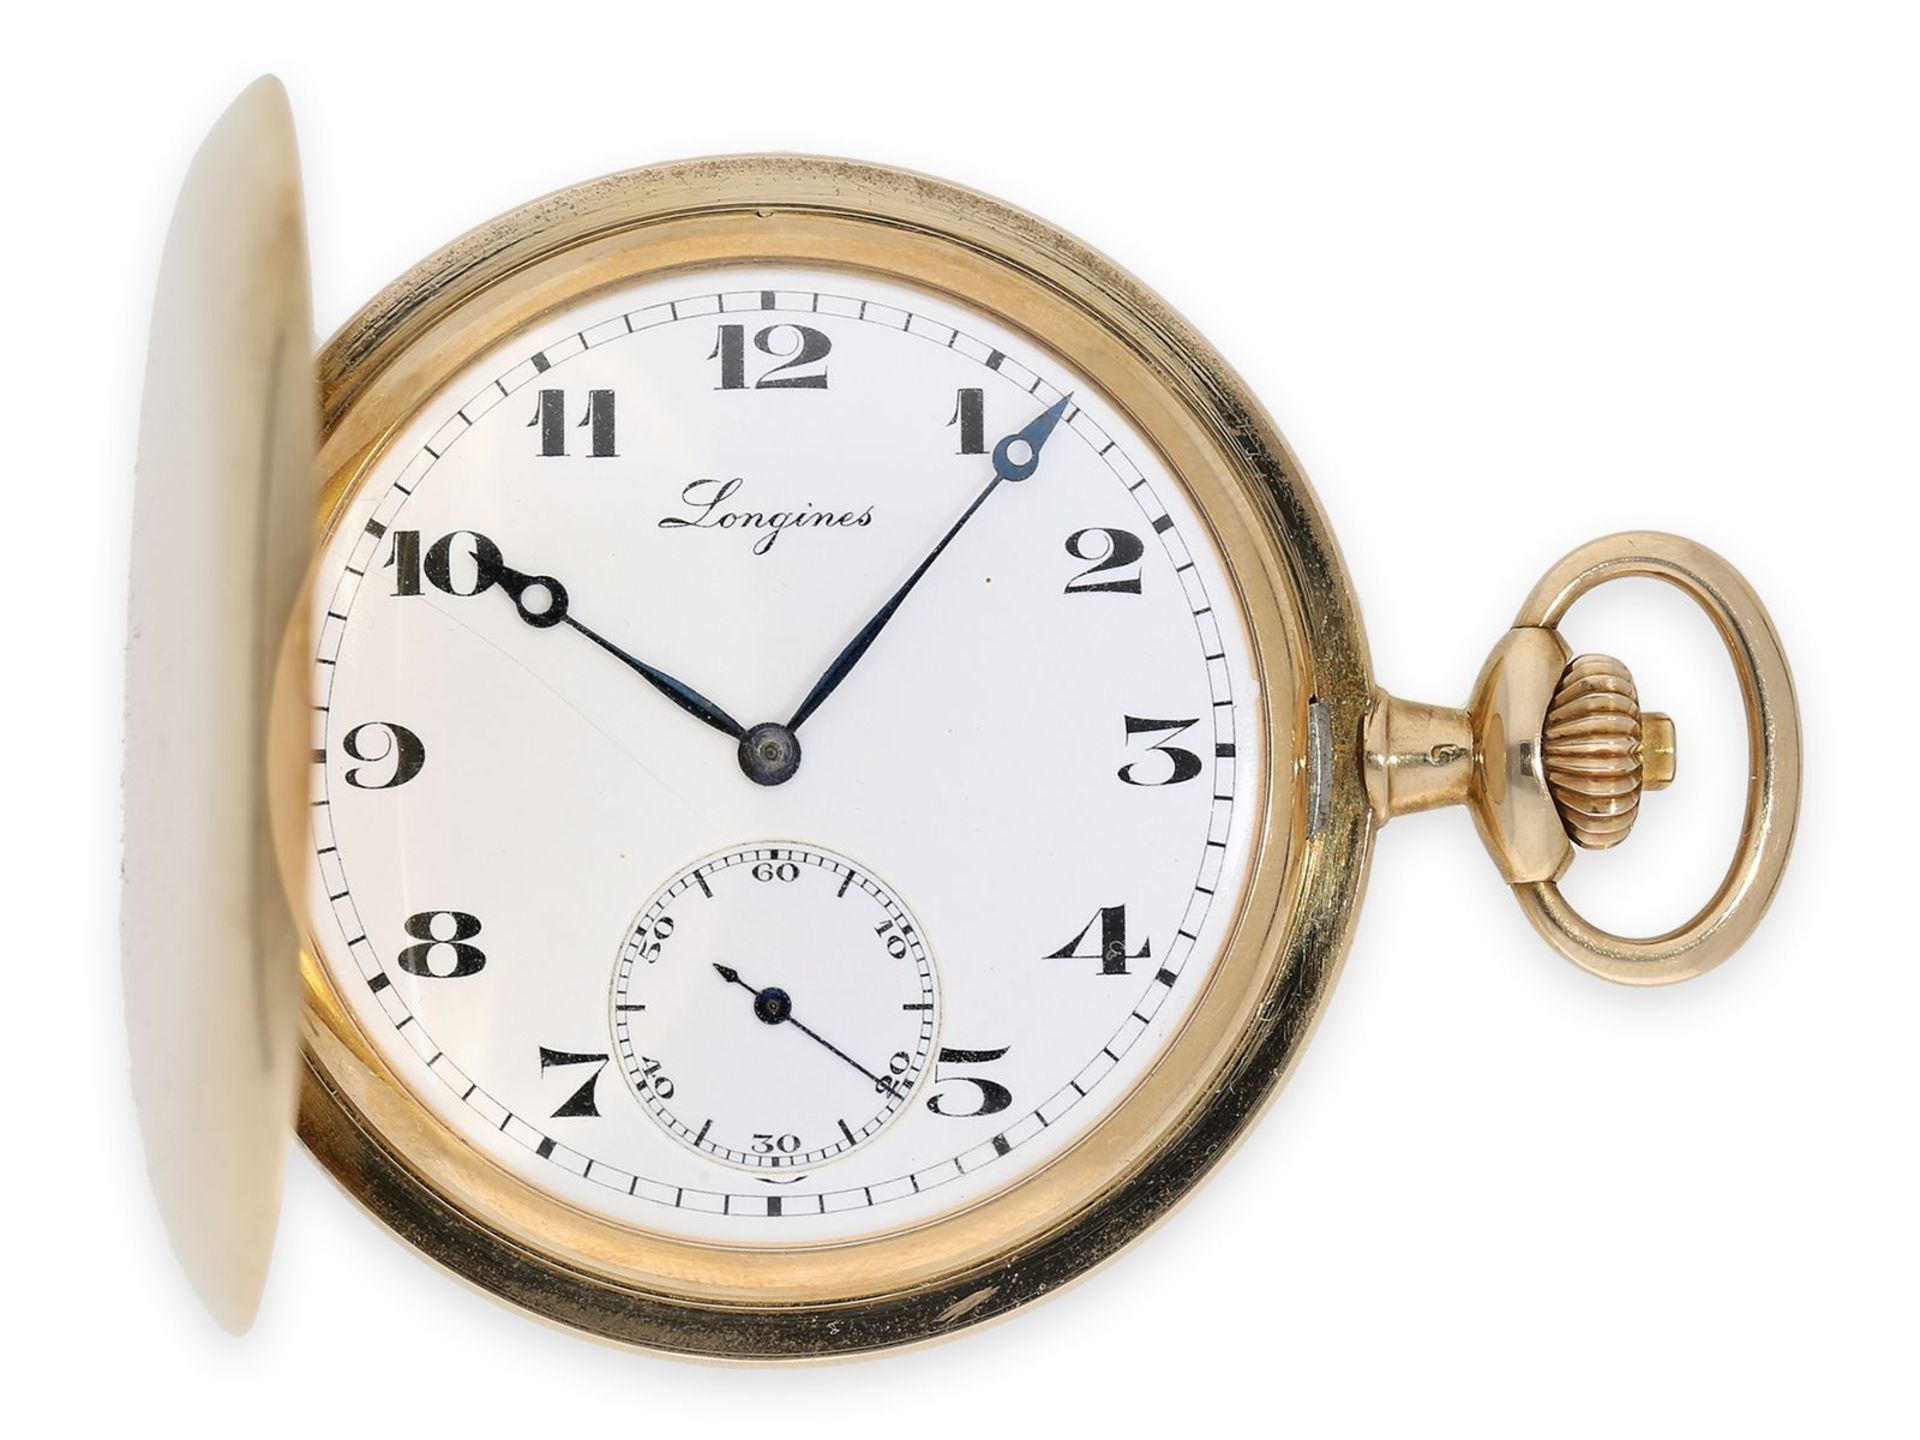 Taschenuhr: qualitätsvolle Goldsavonnette der Marke Longines, Ankerchronometer Kaliber 19.80, ca.